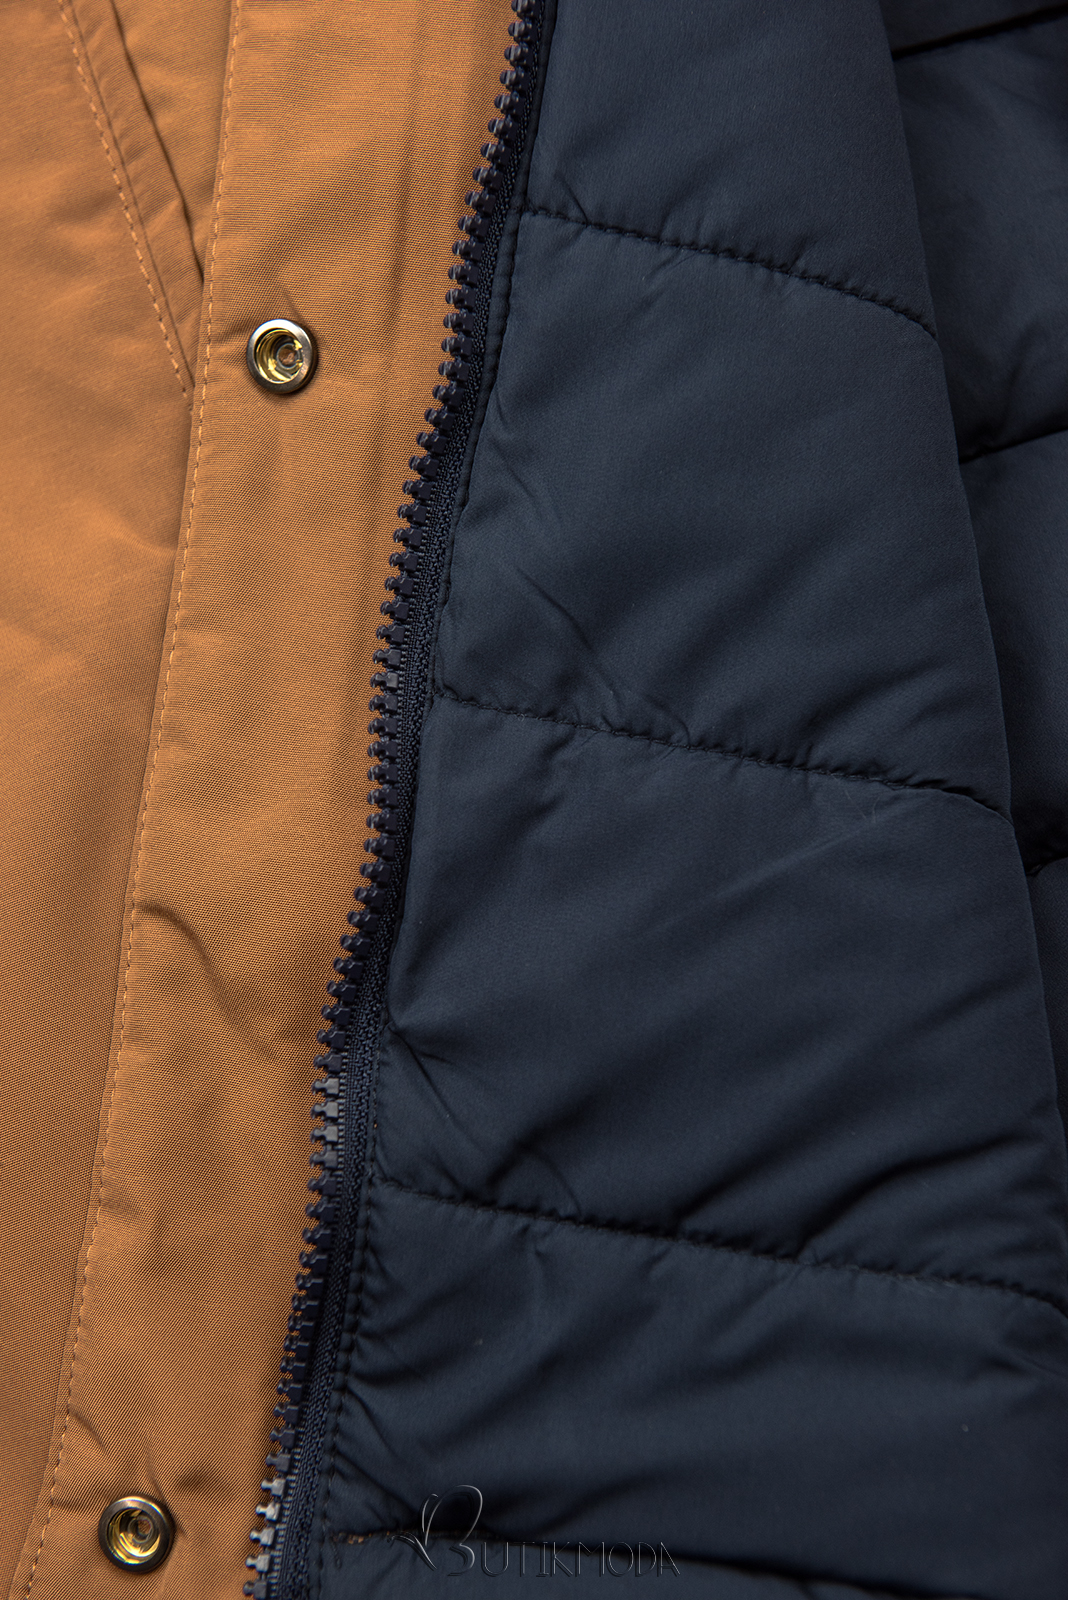 Jacke auf beiden Seiten tragbar braun/dunkelblau